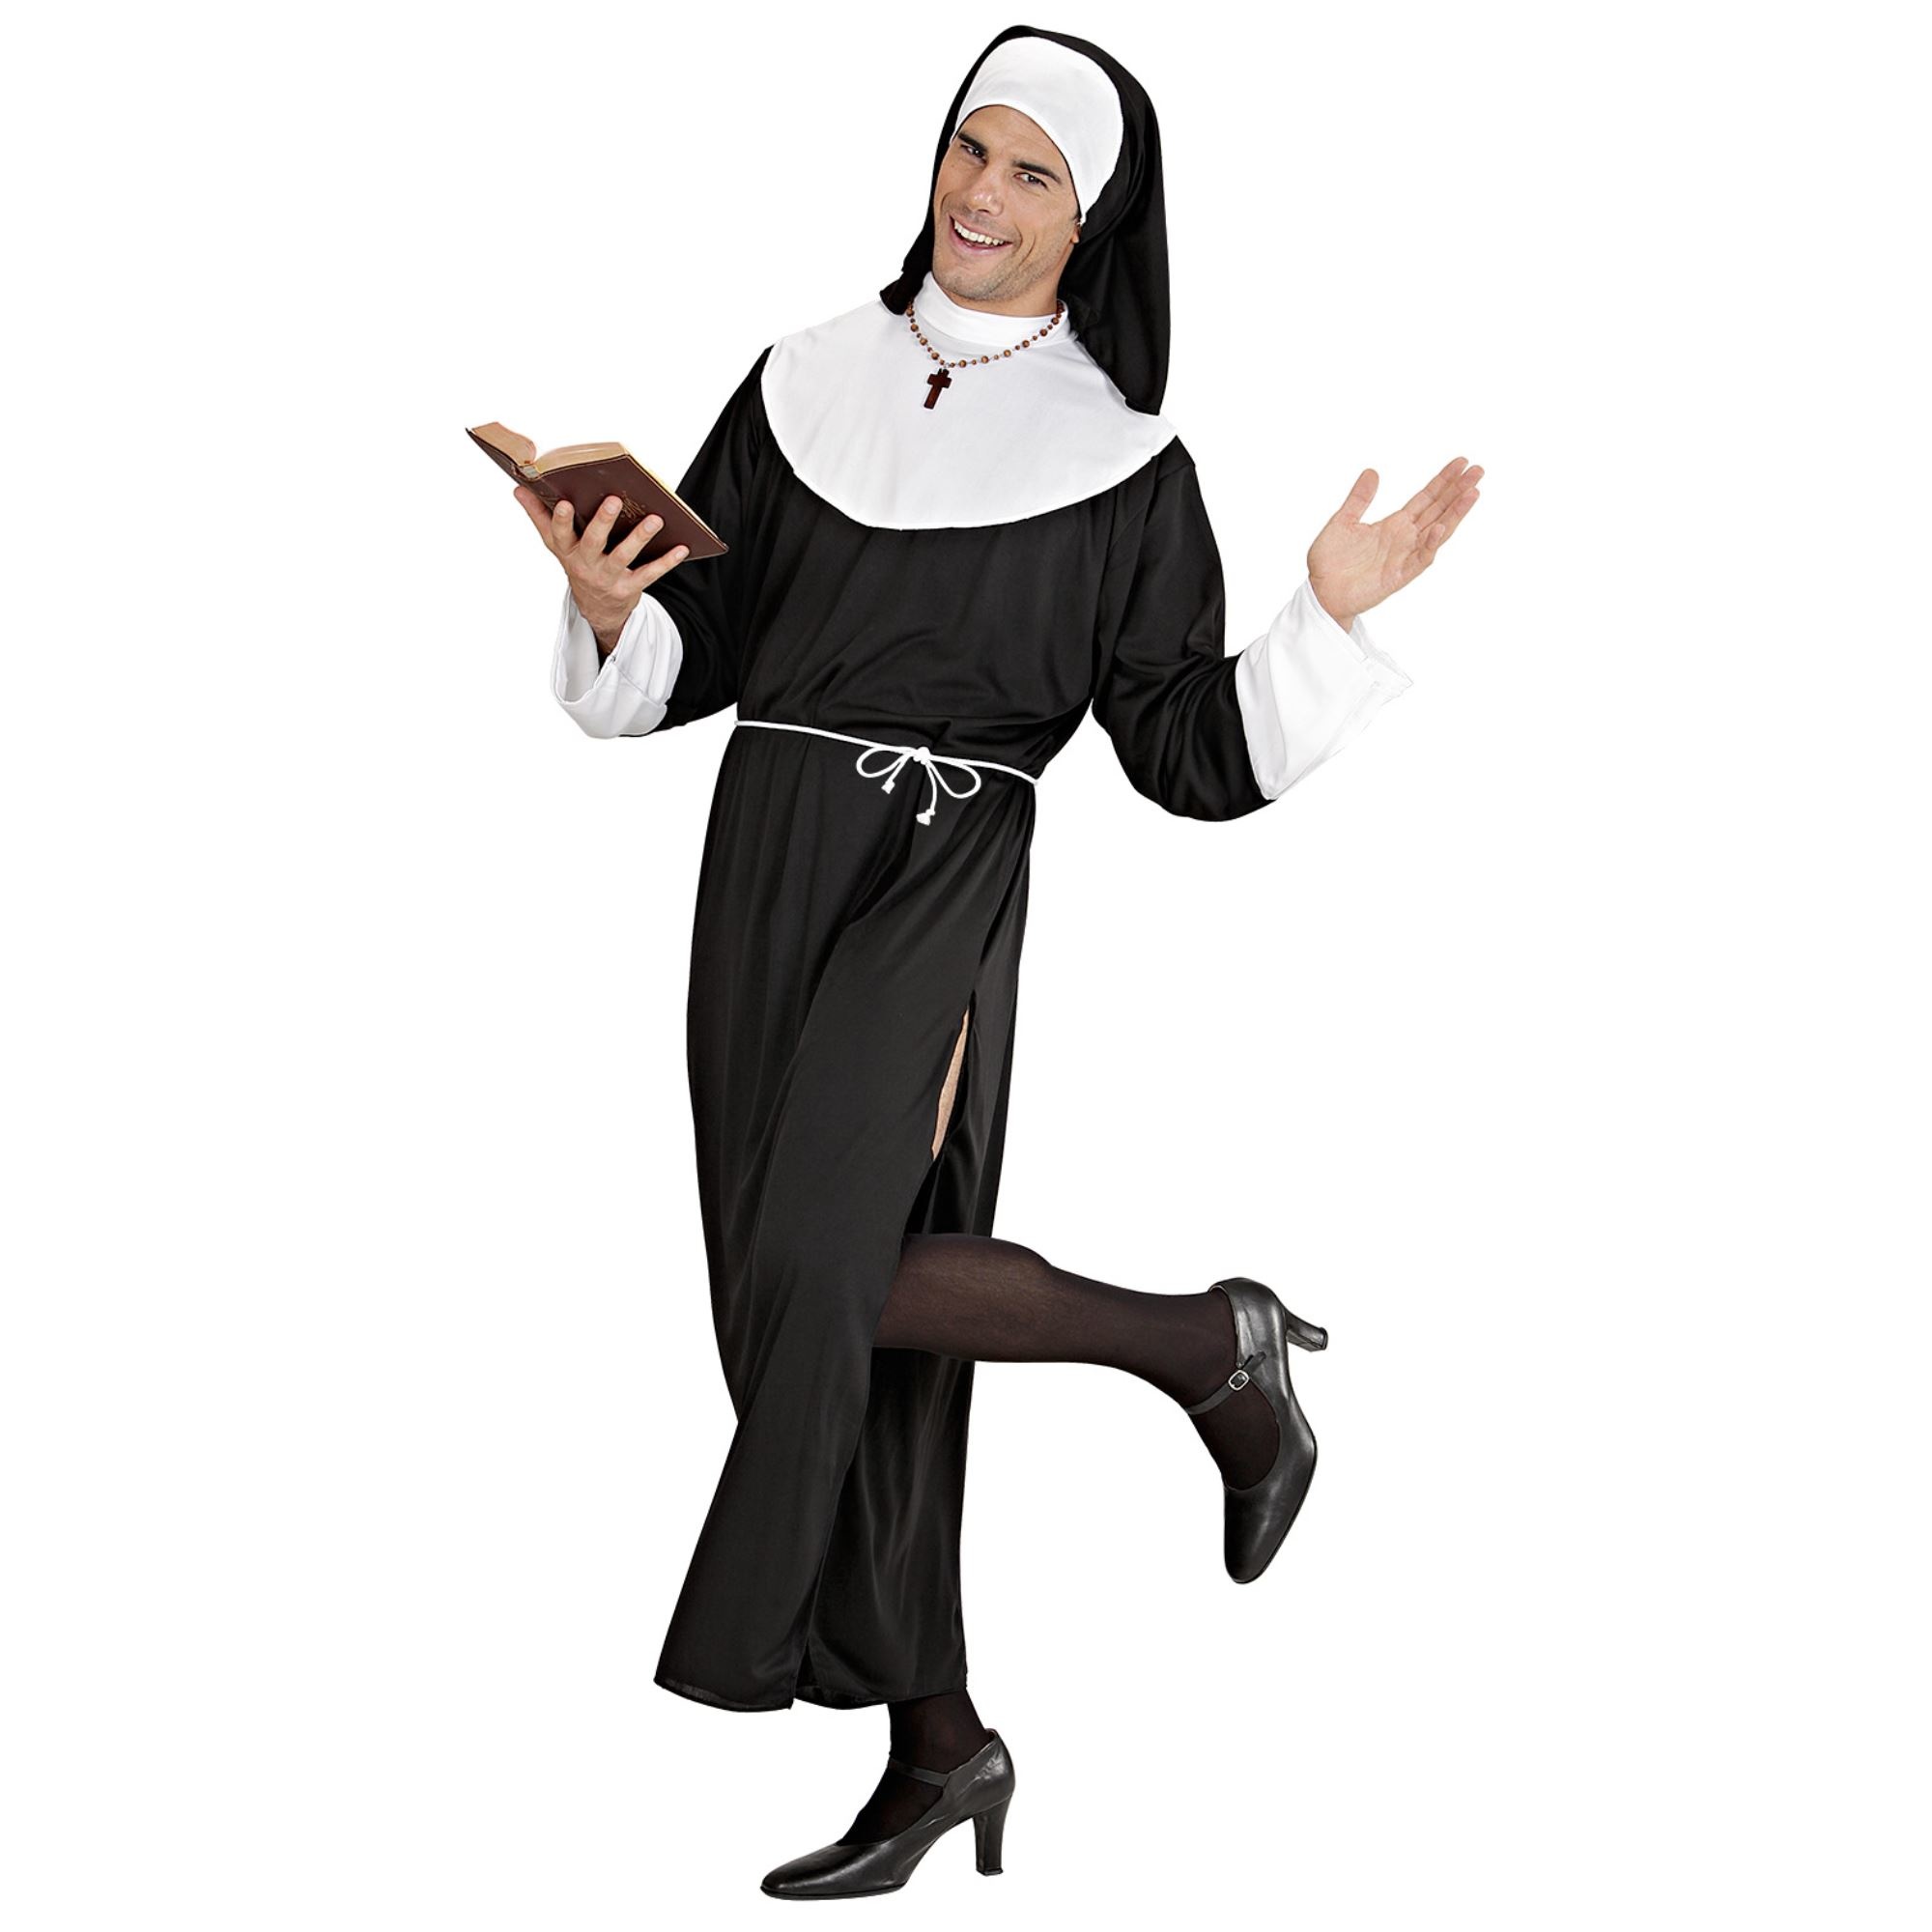 "Religieus kostuum voor mannen - Verkleedkleding - Large"